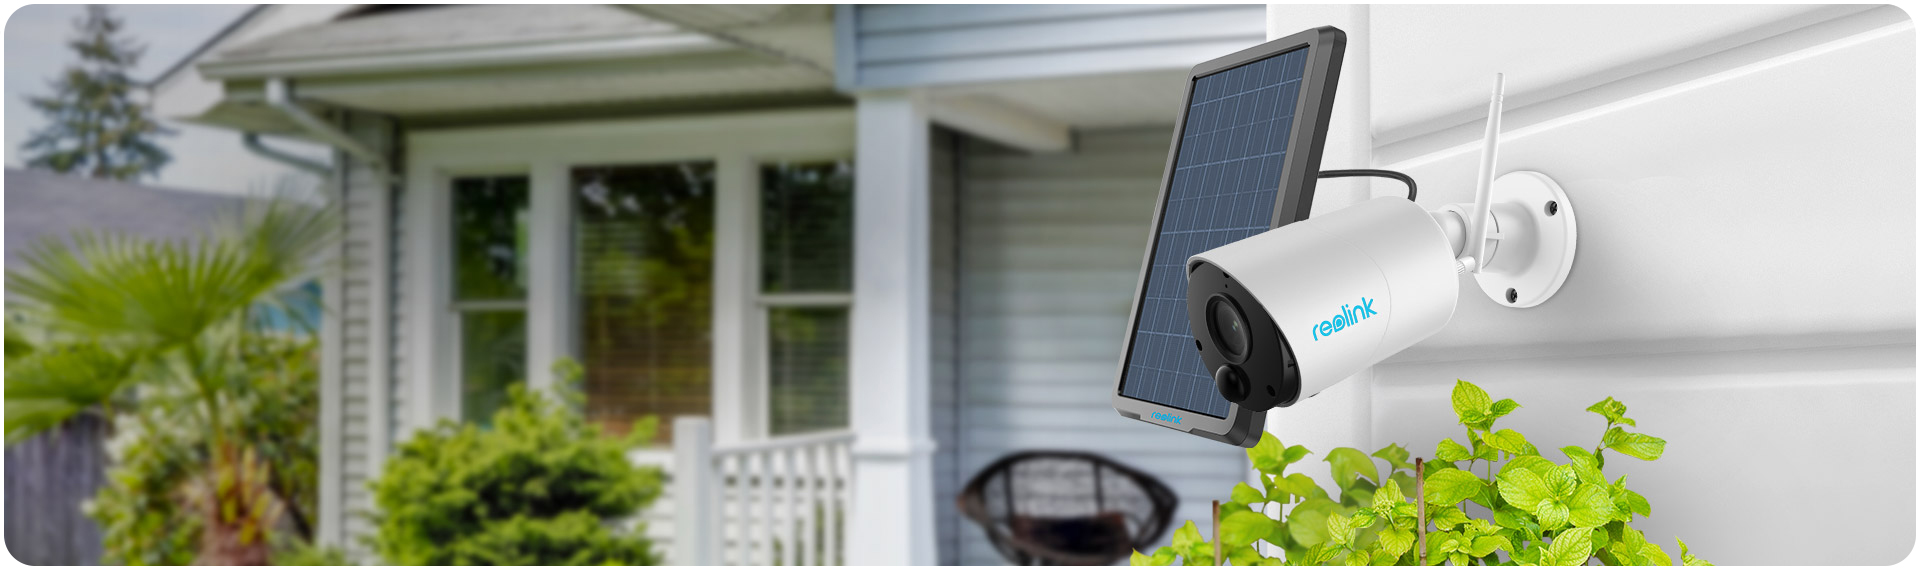 ภาพที่ให้รายละเอียดเกี่ยวกับ Reolink Argus Eco Rechargeable Sec IP Camera 2MP+Panel Solar)